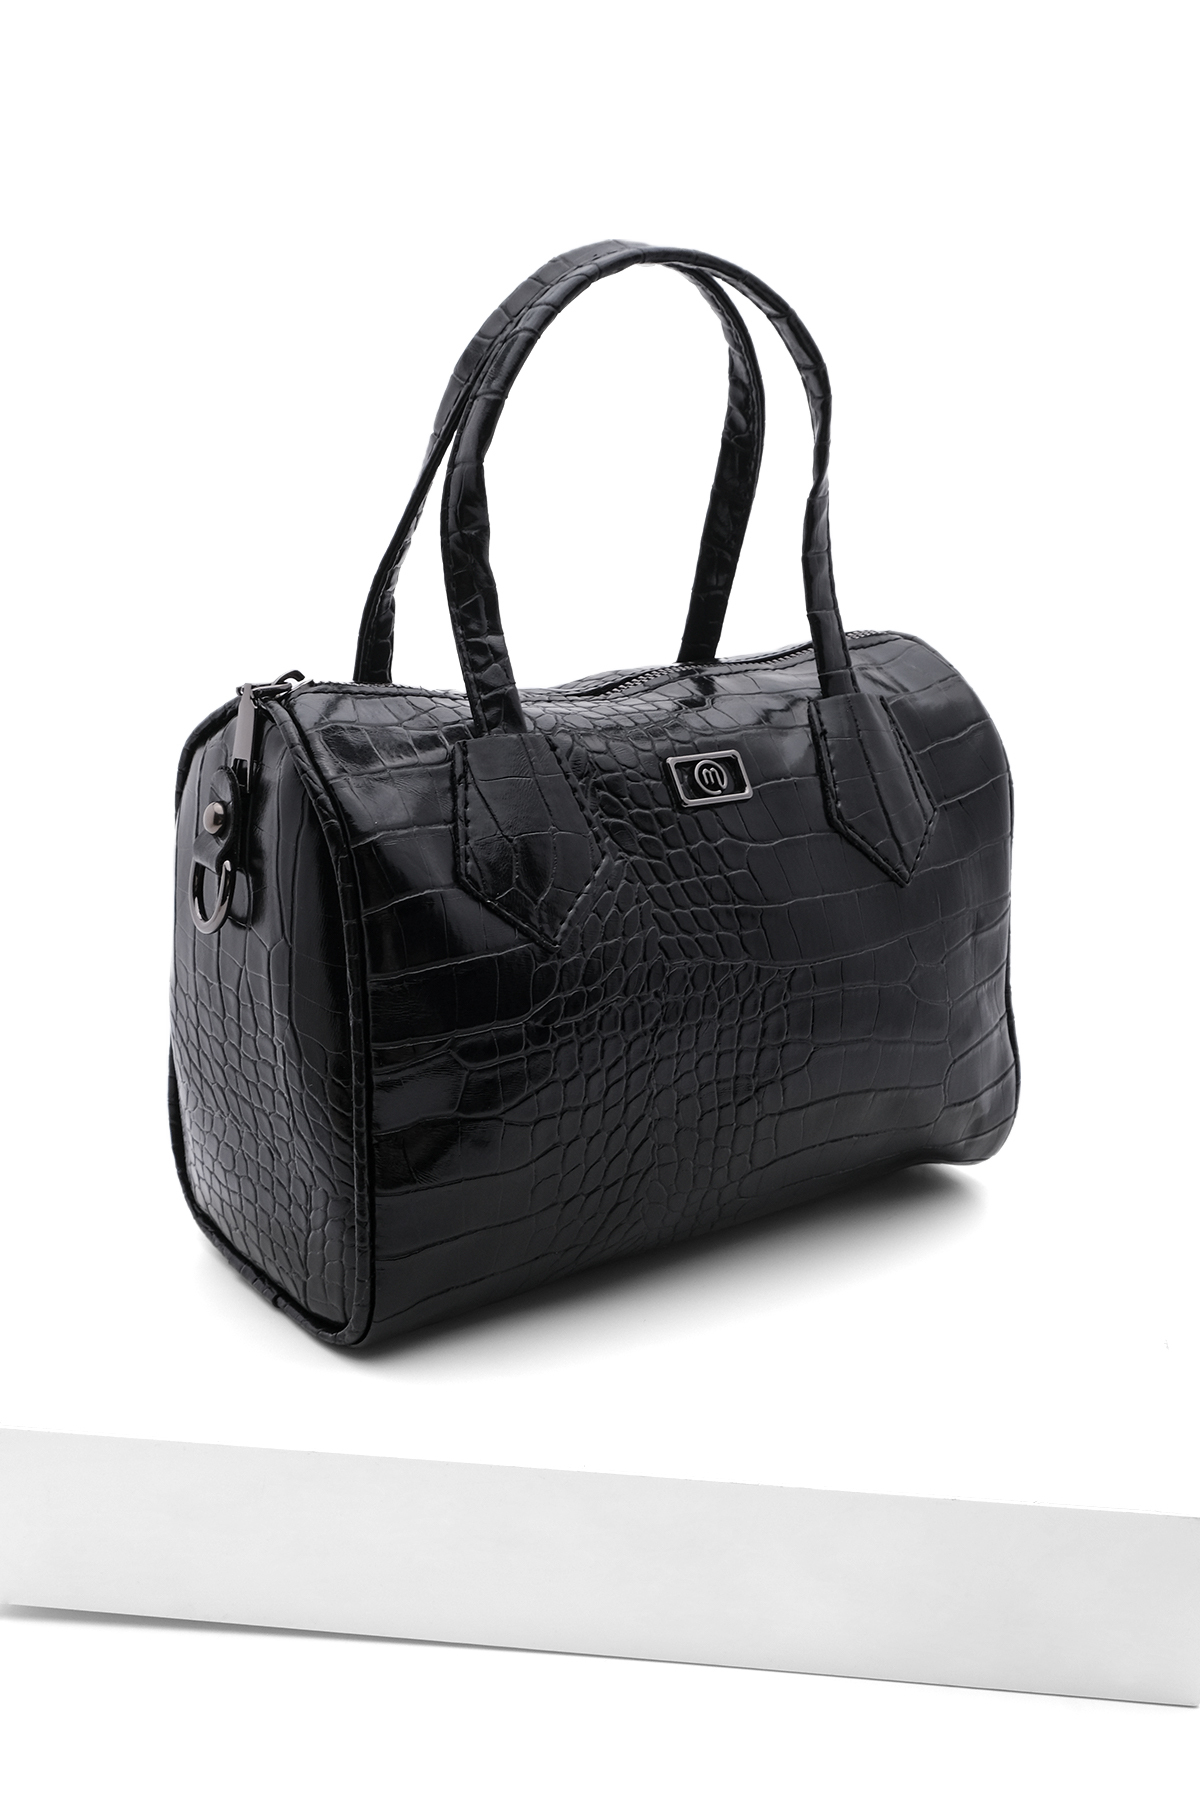 Levně Marjin Women's Adjustable Straps Hand Shoulder Bag Celiza Black Croco